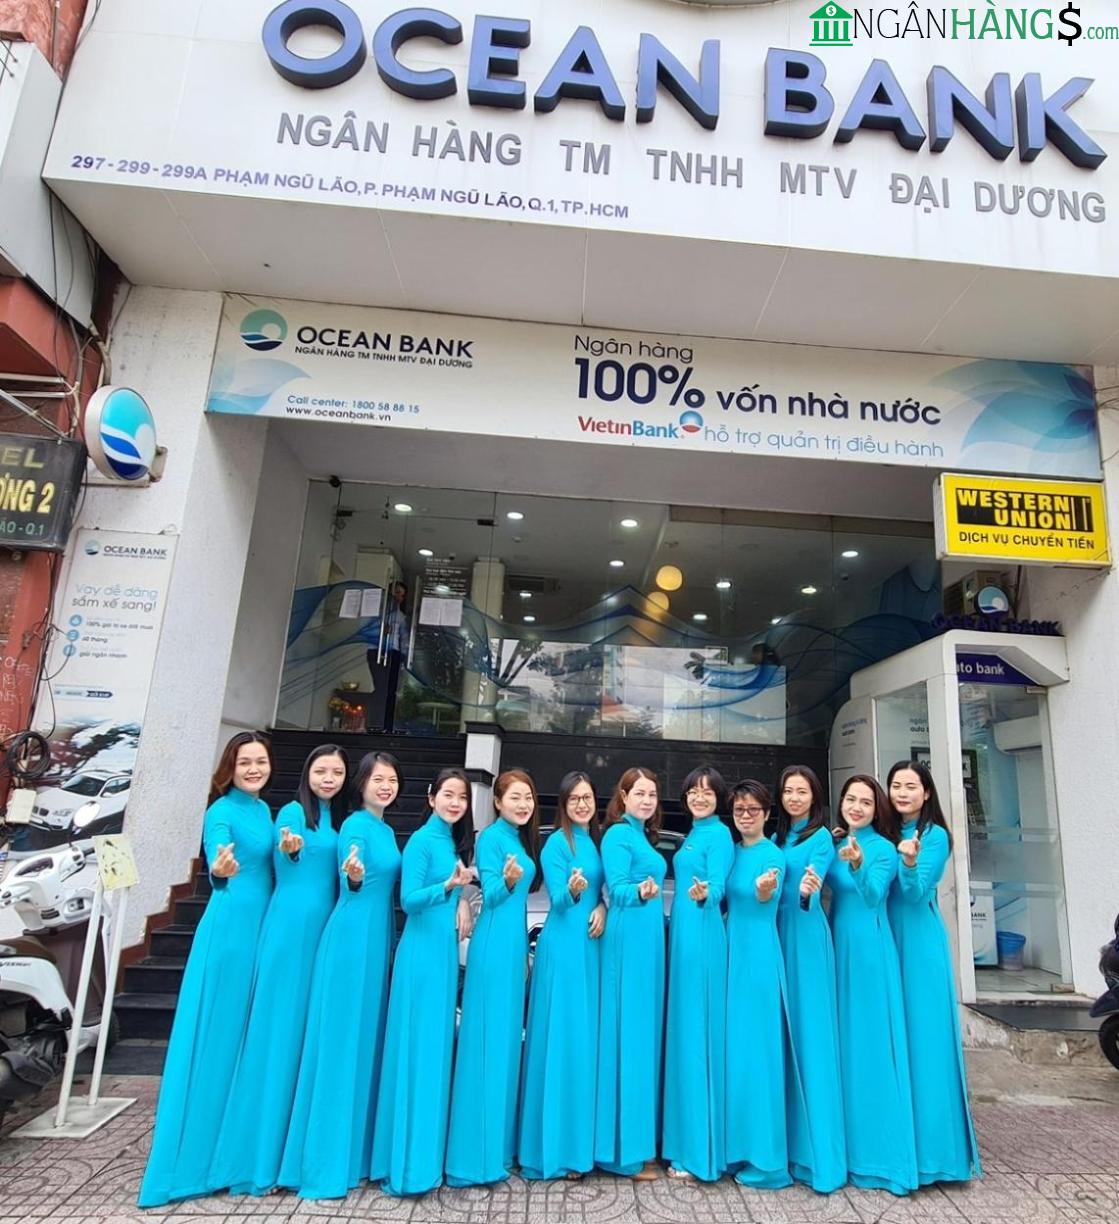 Ảnh Cây ATM ngân hàng Đại Dương Oceanbank PGD Tân Phú 1